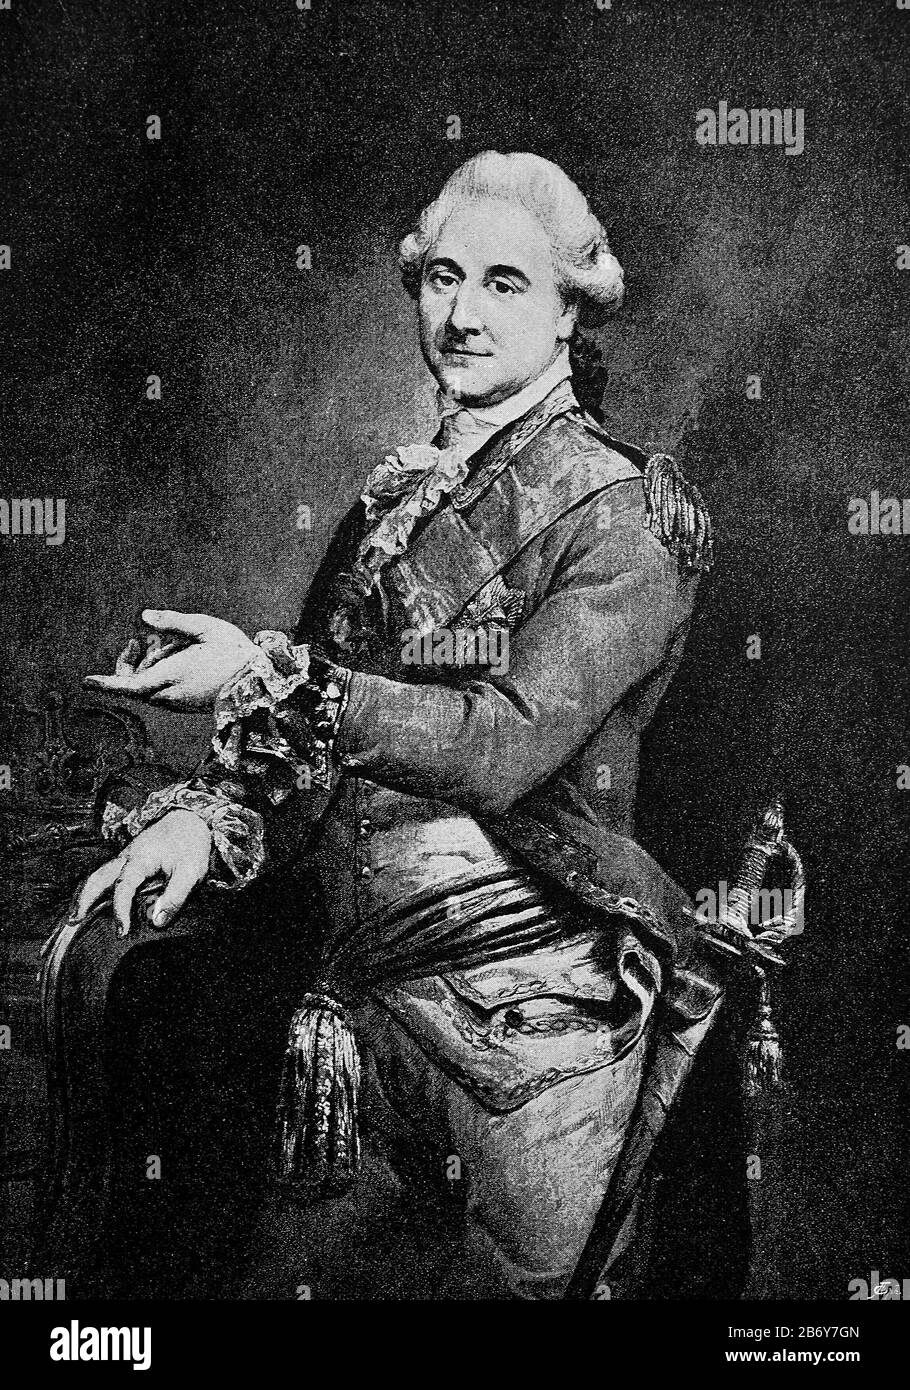 Stanislaw Ii Août, Stanislaw Antoni Poniatowski, 17 Janvier 1732-1712. Février 179, originaire de la noble famille des Poniatowskis, a été élu roi de Pologne et Grand prince de Lituanie en 1764 avec un soutien massif de l'impératrice russe Catherine le Grand et a gouverné jusqu'à son abdication en 1795 / Stanislaw II Août, Stanislaw Antoni Poniatowski, 17. Januar 1732-12. 2, 4, 4, 5, 5, 5, 5, 5, 5, 5, 5, 5, 5, 5, 5, 5, 5, 5, 5, 5, 5, 5, 5, 5, 5, 5, 5, 5, 5, 5, 5, 5, 5, 5, 5, 5, 5, 5, 5, 5, 5, 5, 5, 5, 5, 5, 5, 5, 5, 5 Banque D'Images